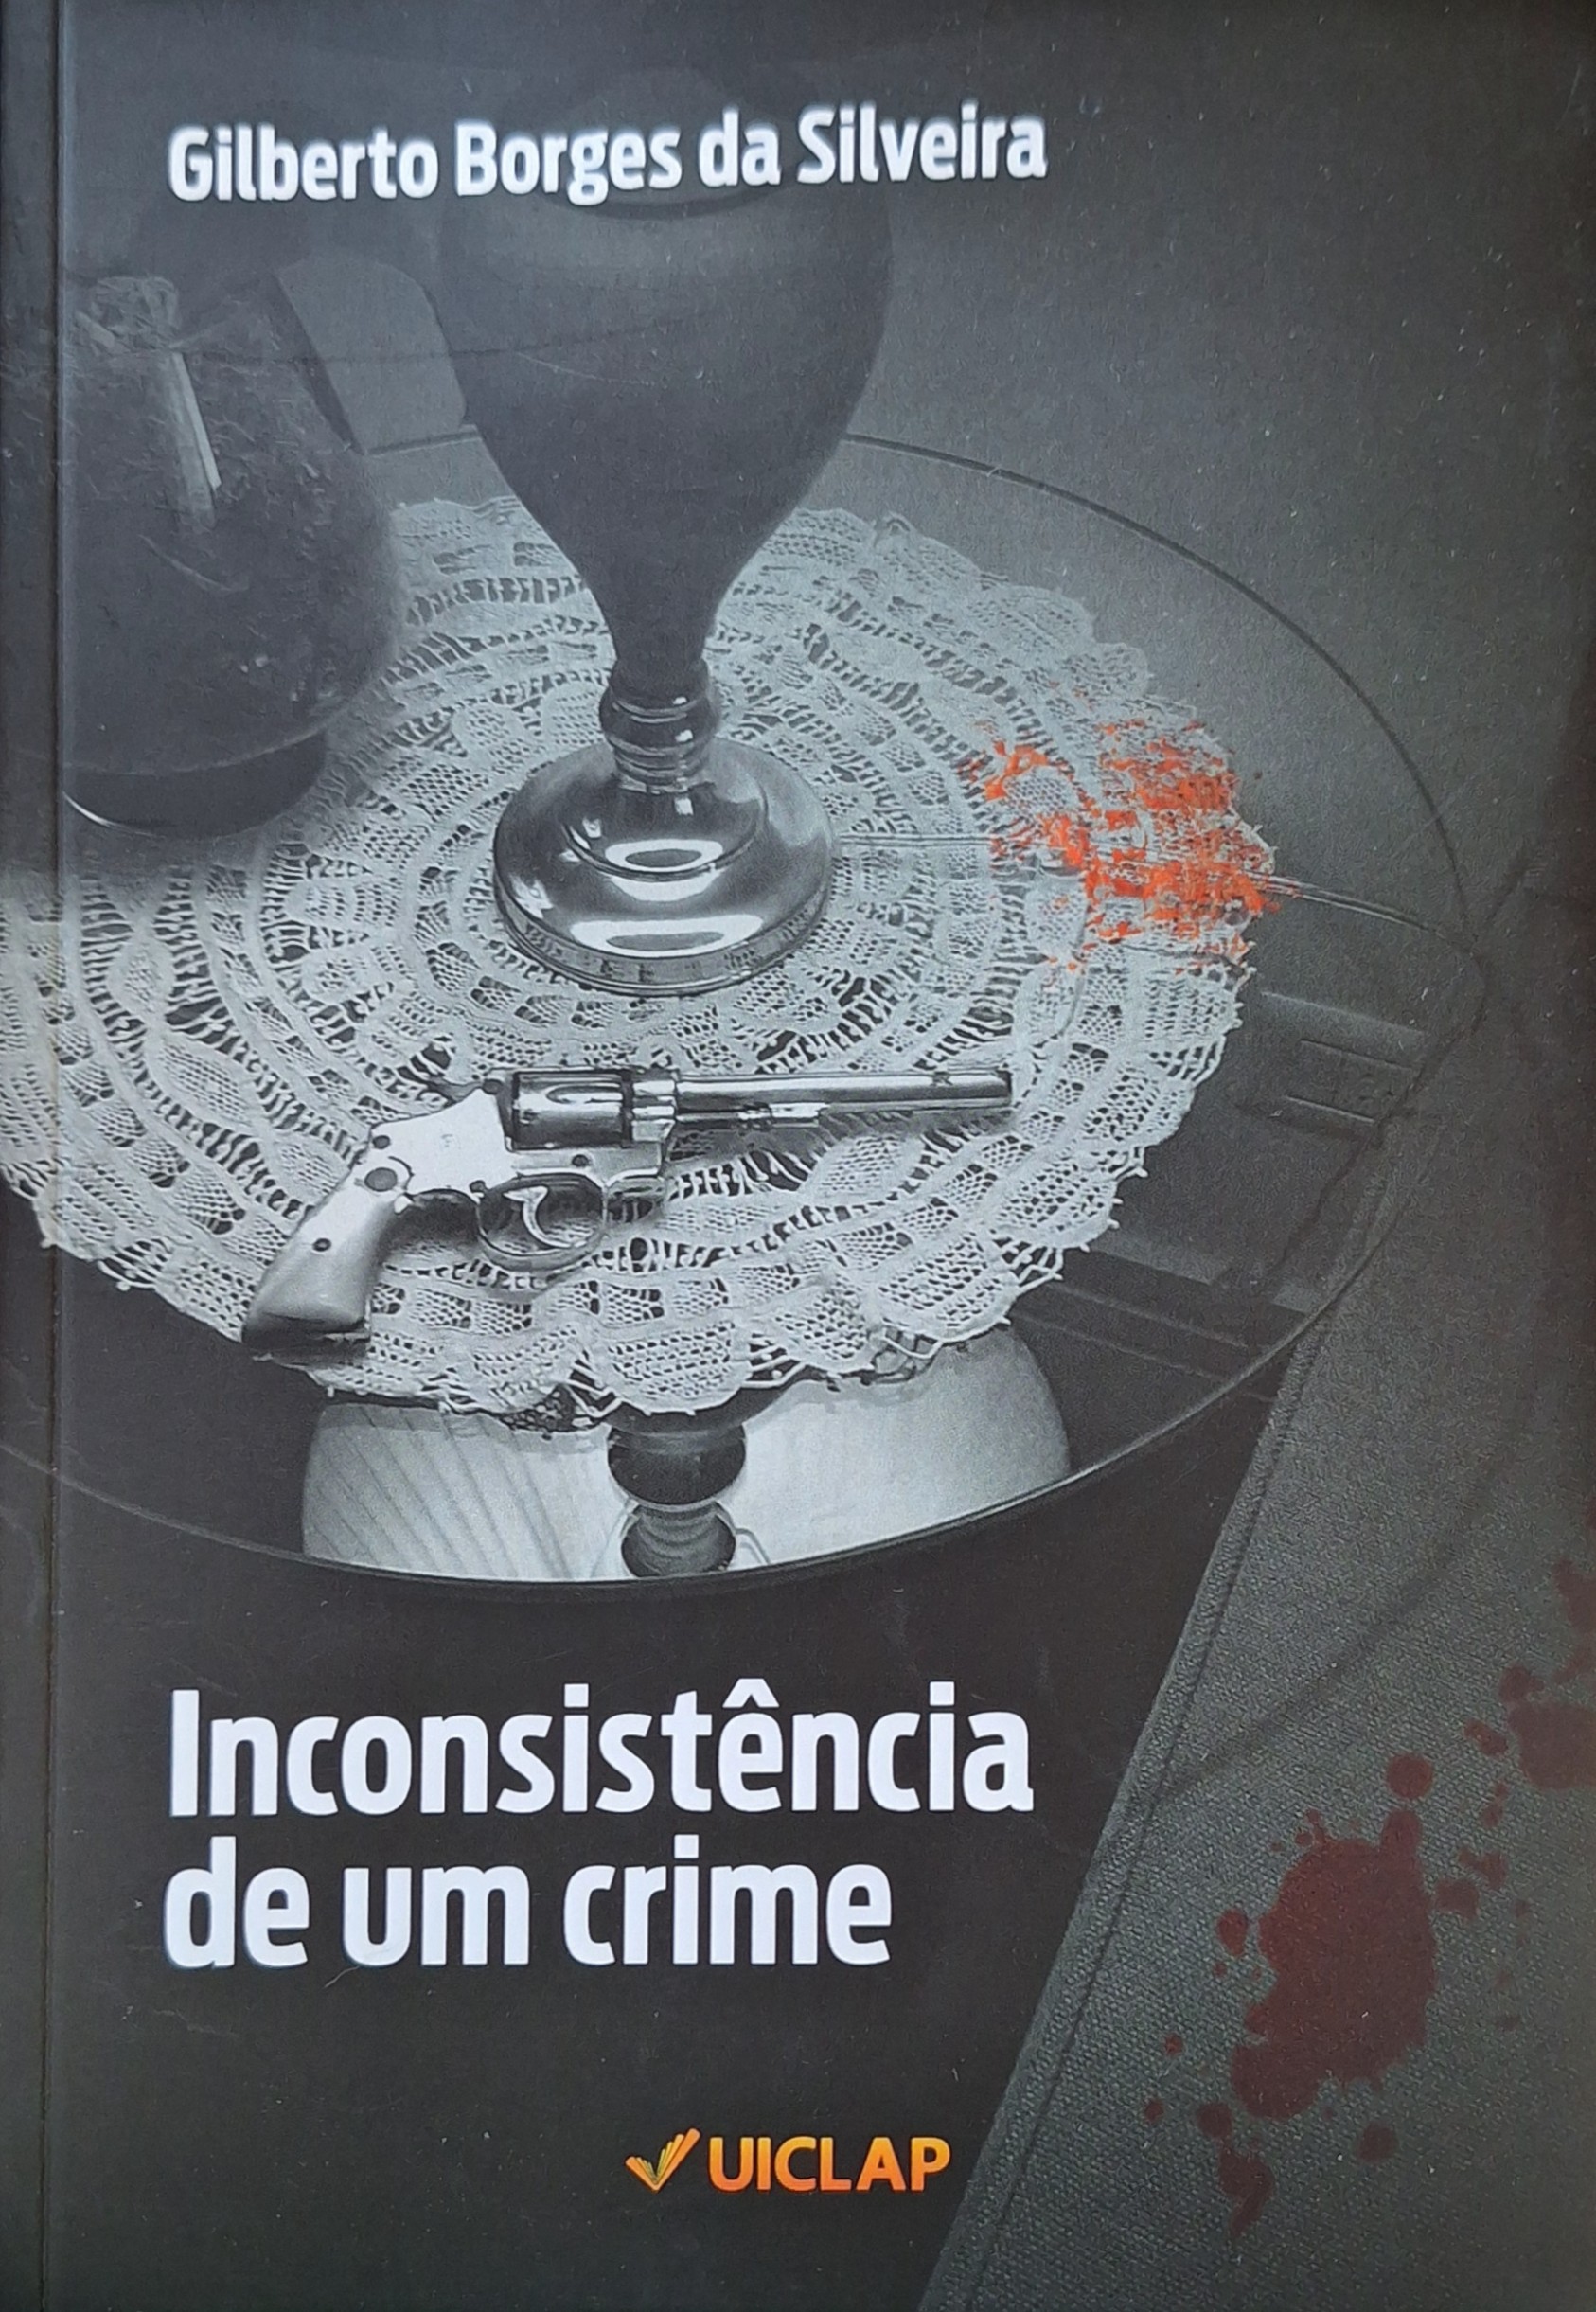 Capa do livro 'Inconsistência de um crime', de Gilberto Borges da Silveira,pela Editora Uiclap